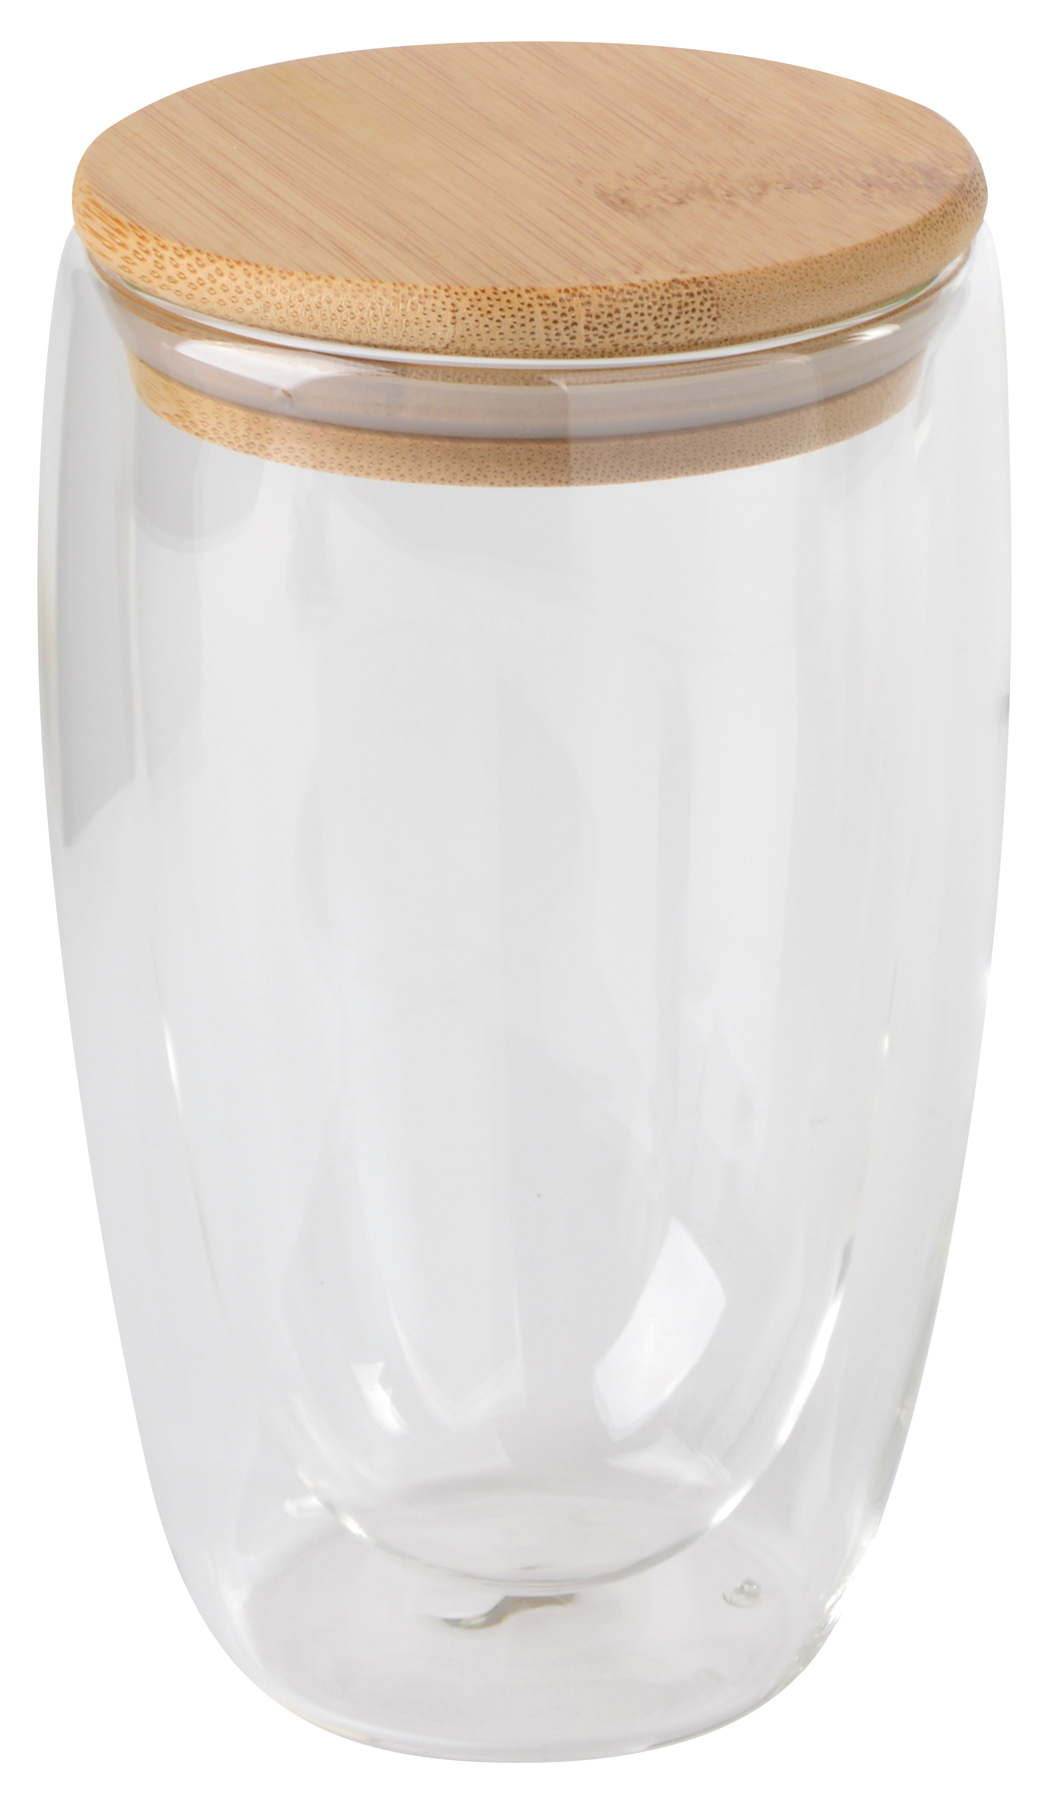 Dvouplášťová sklenice BAMBOO ART L  s víčkem z bambusu: průhledné, odolné vůči teplotě, kapacita cca. 450 ml - hnědá